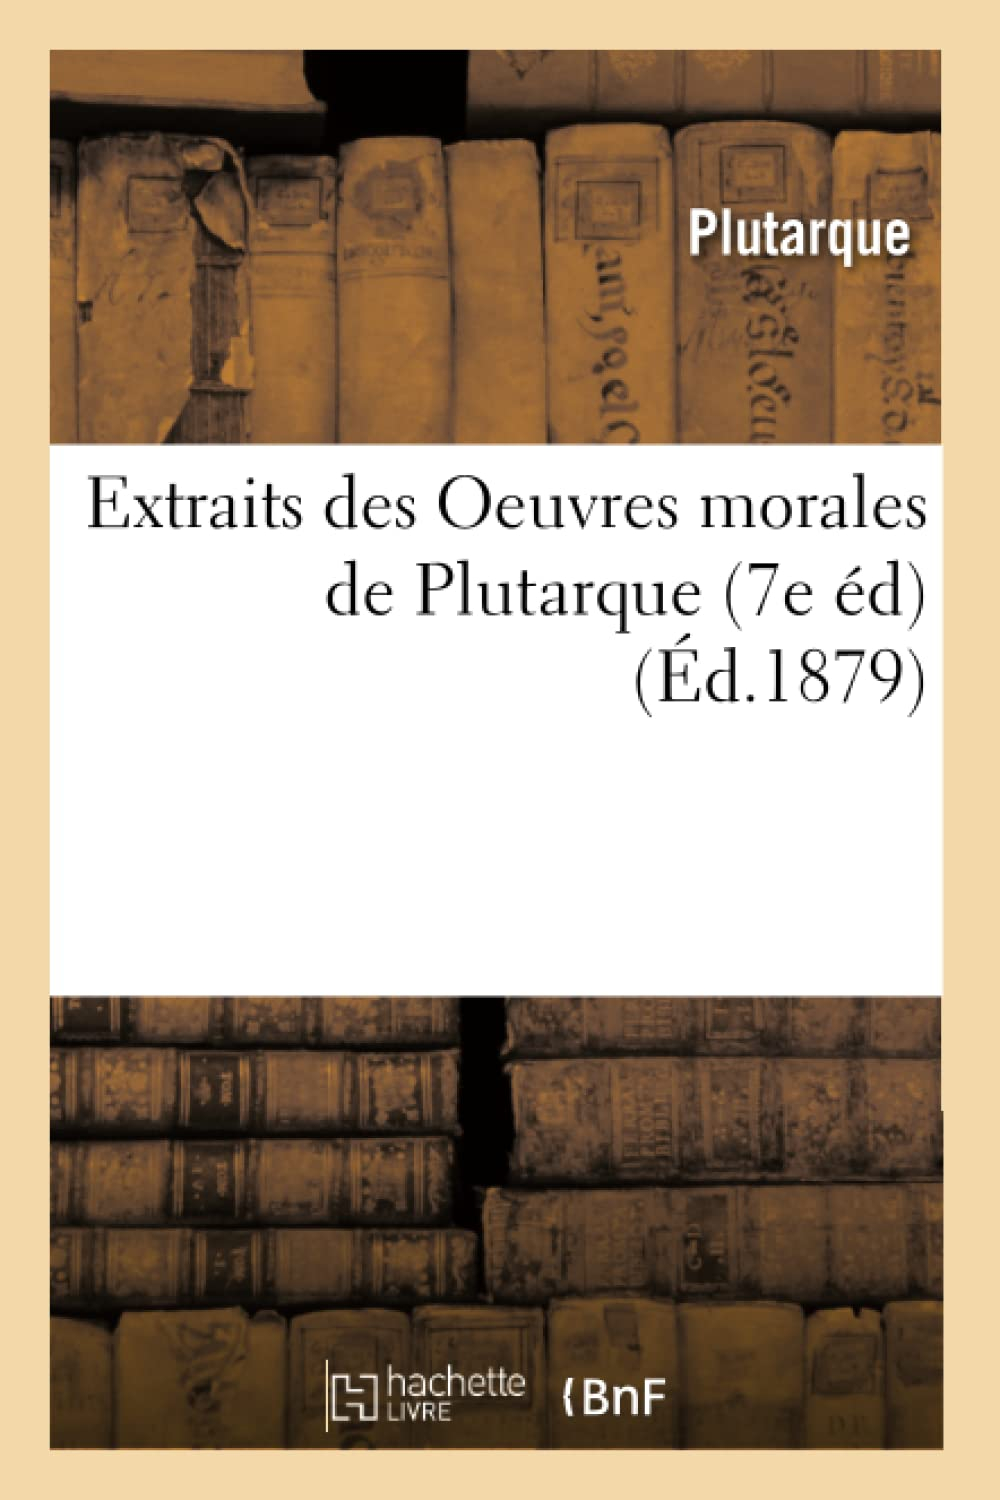 Extraits des Oeuvres morales de Plutarque (7e éd) (Ed.1879)